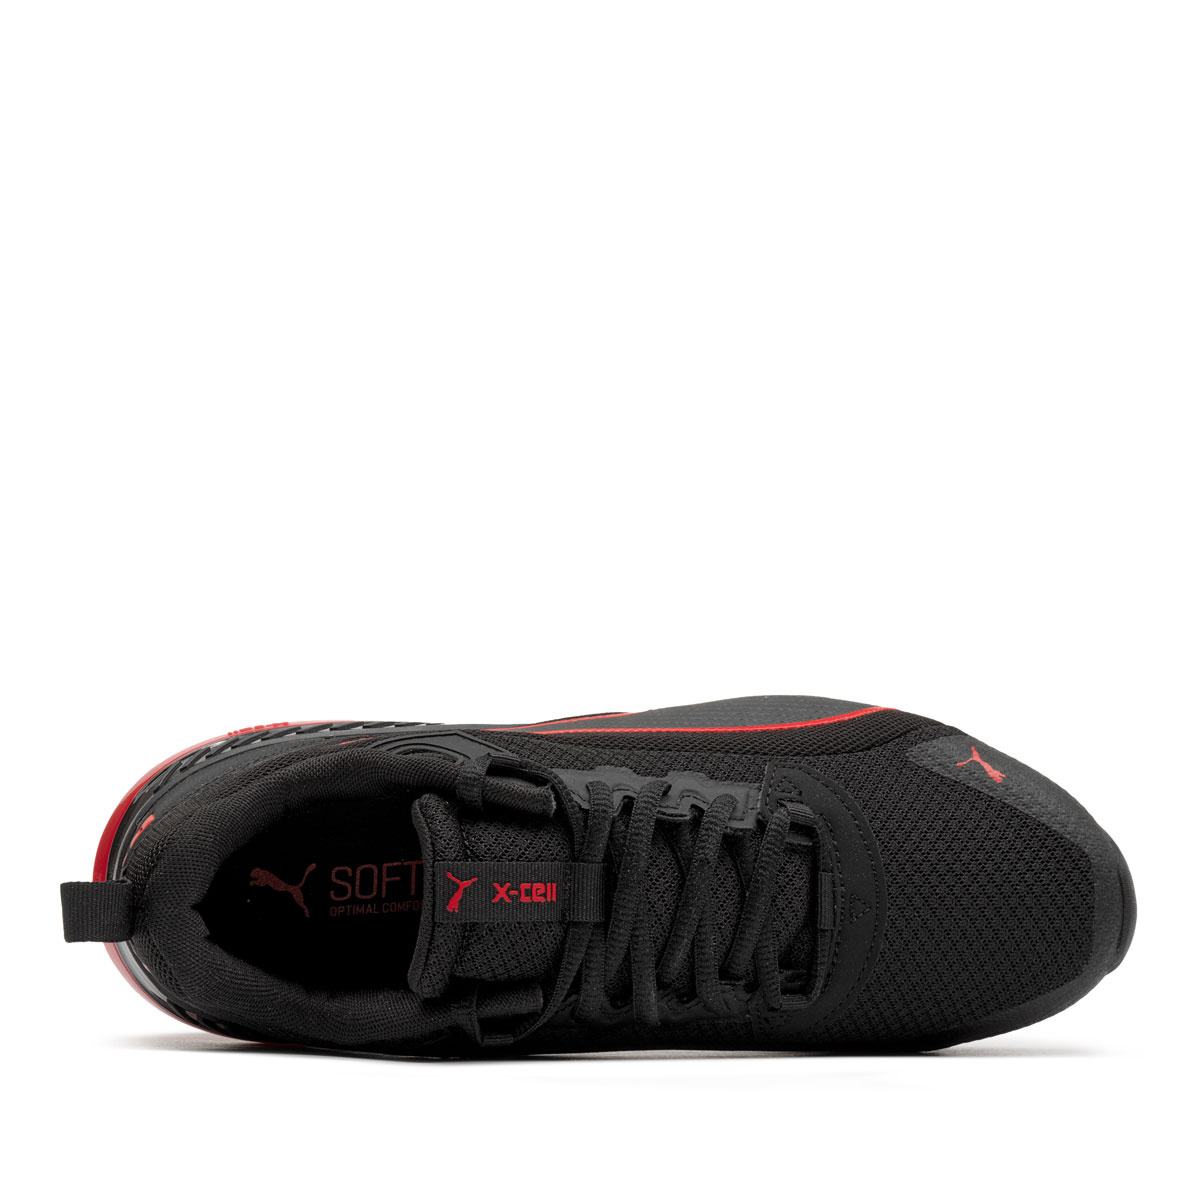 Puma X-Cell Uprise Мъжки спортни обувки 376145-13